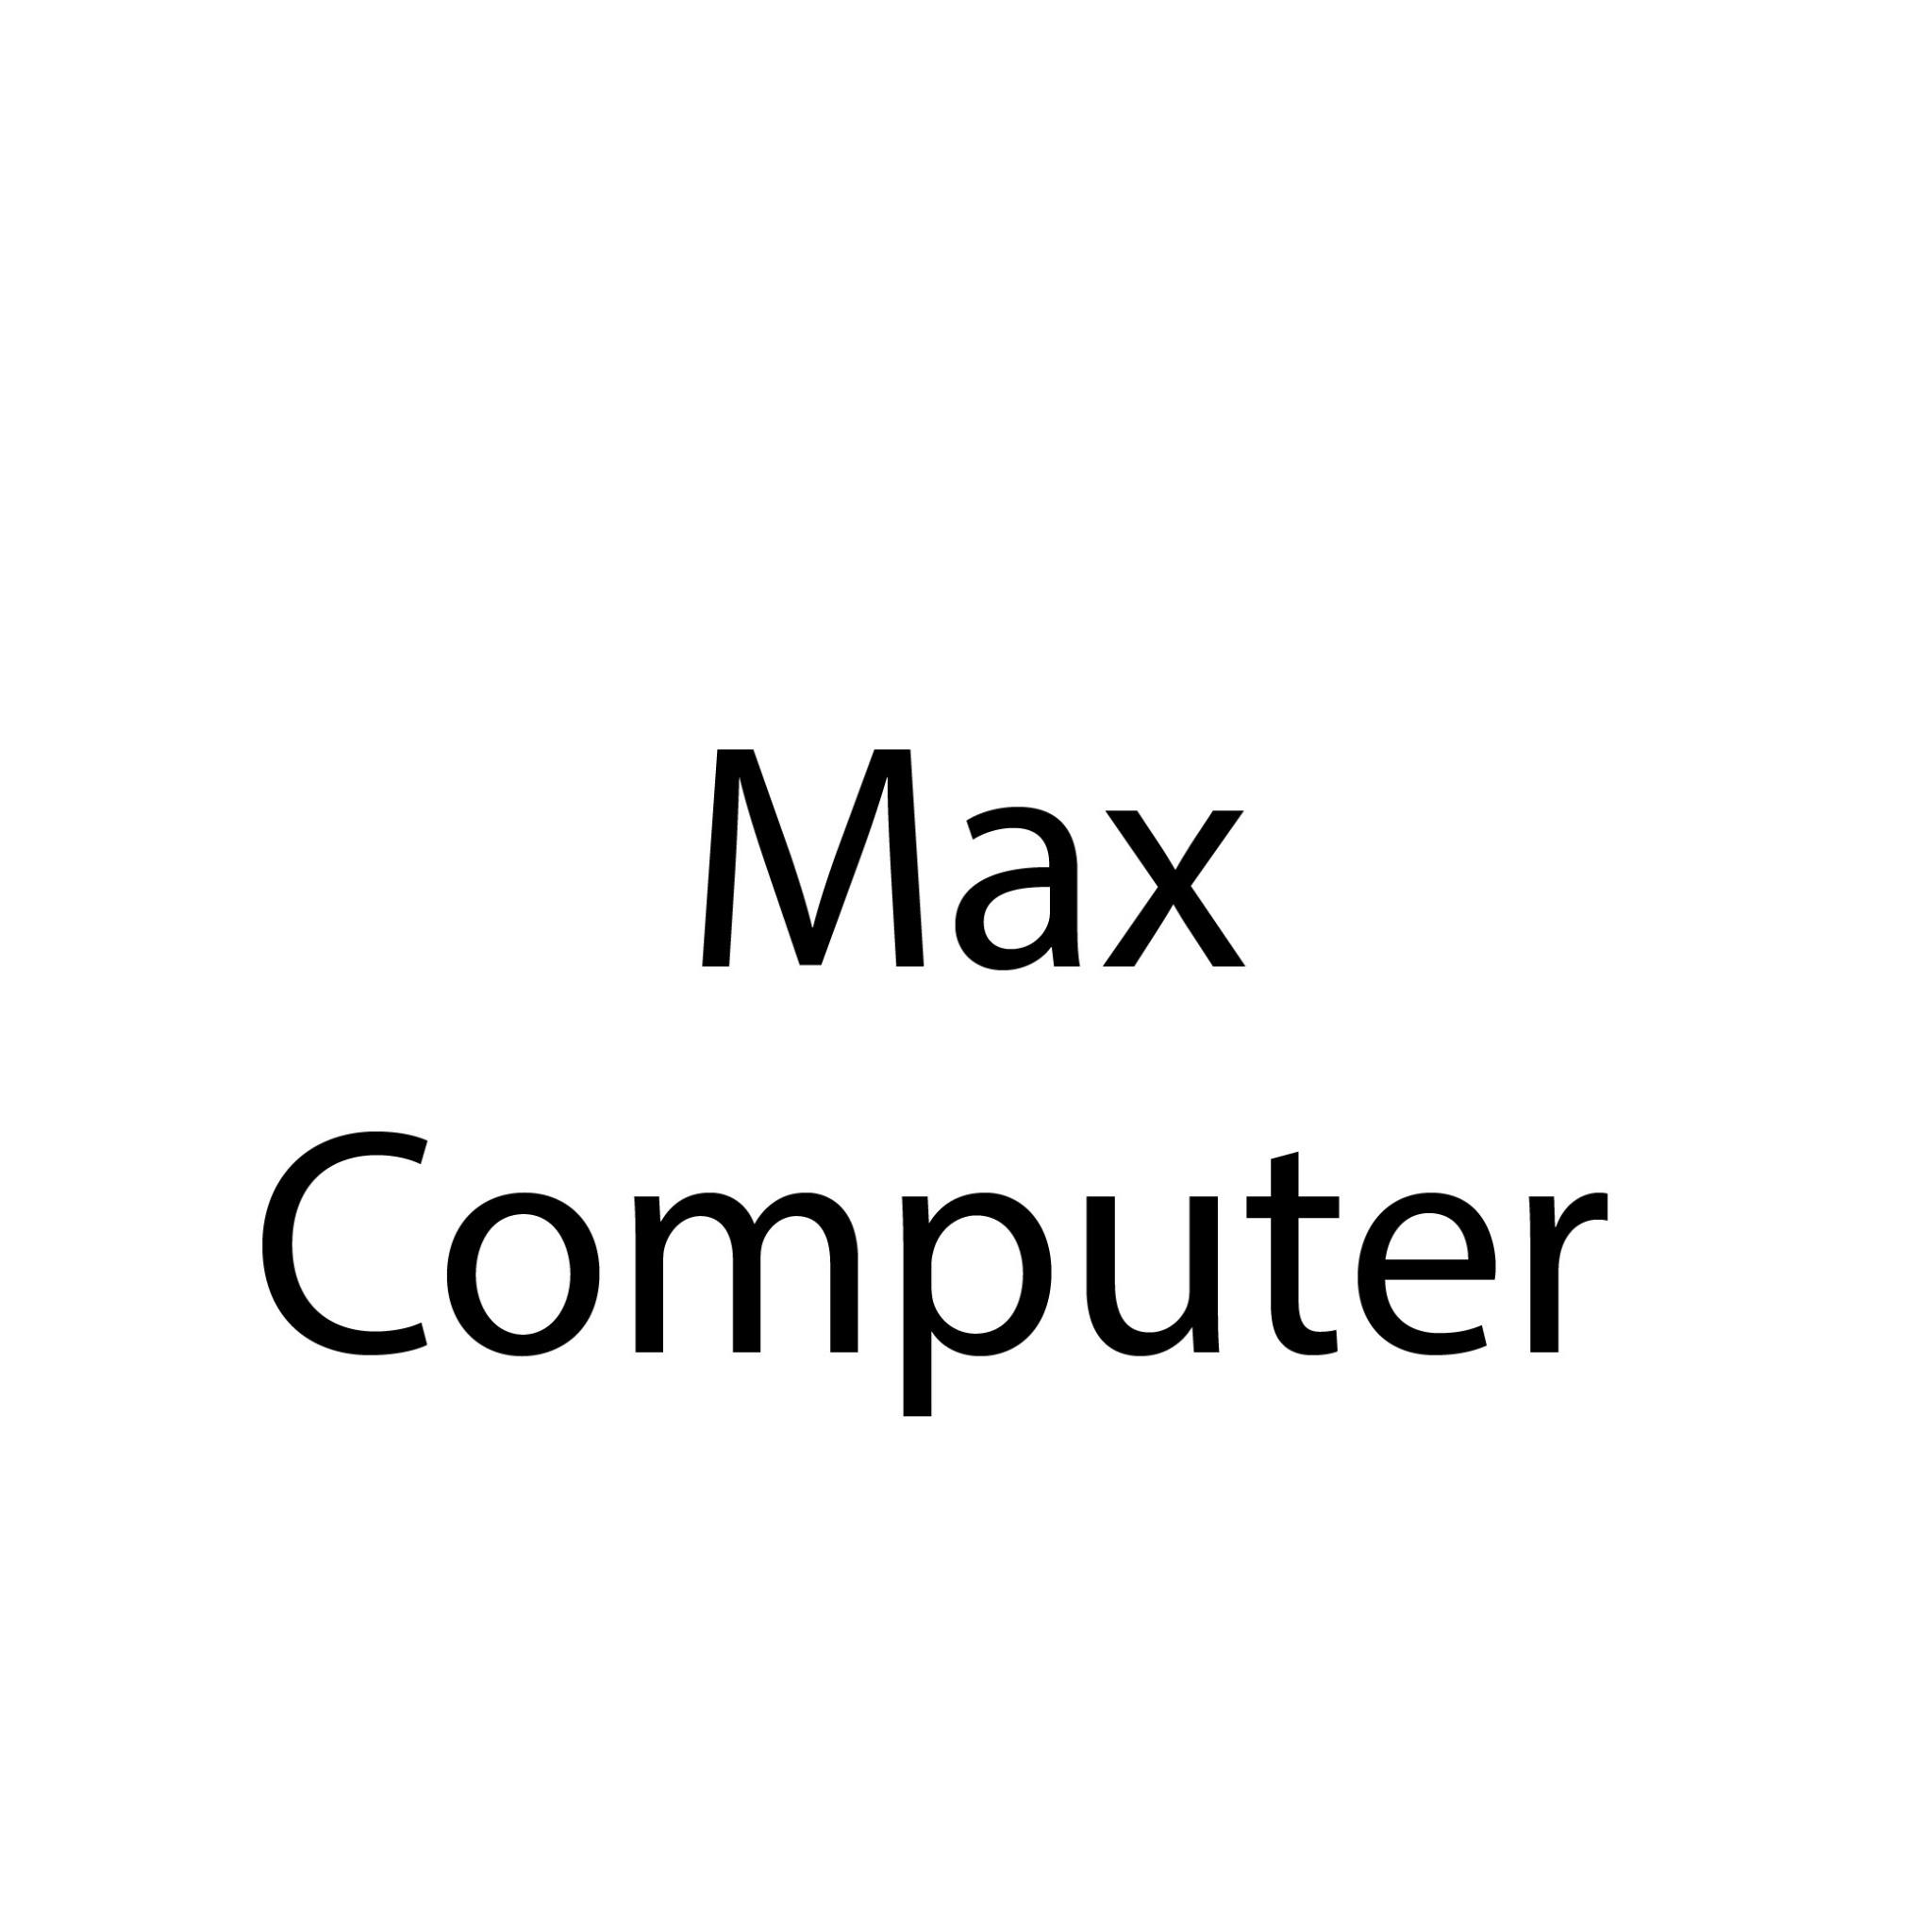 max computer program